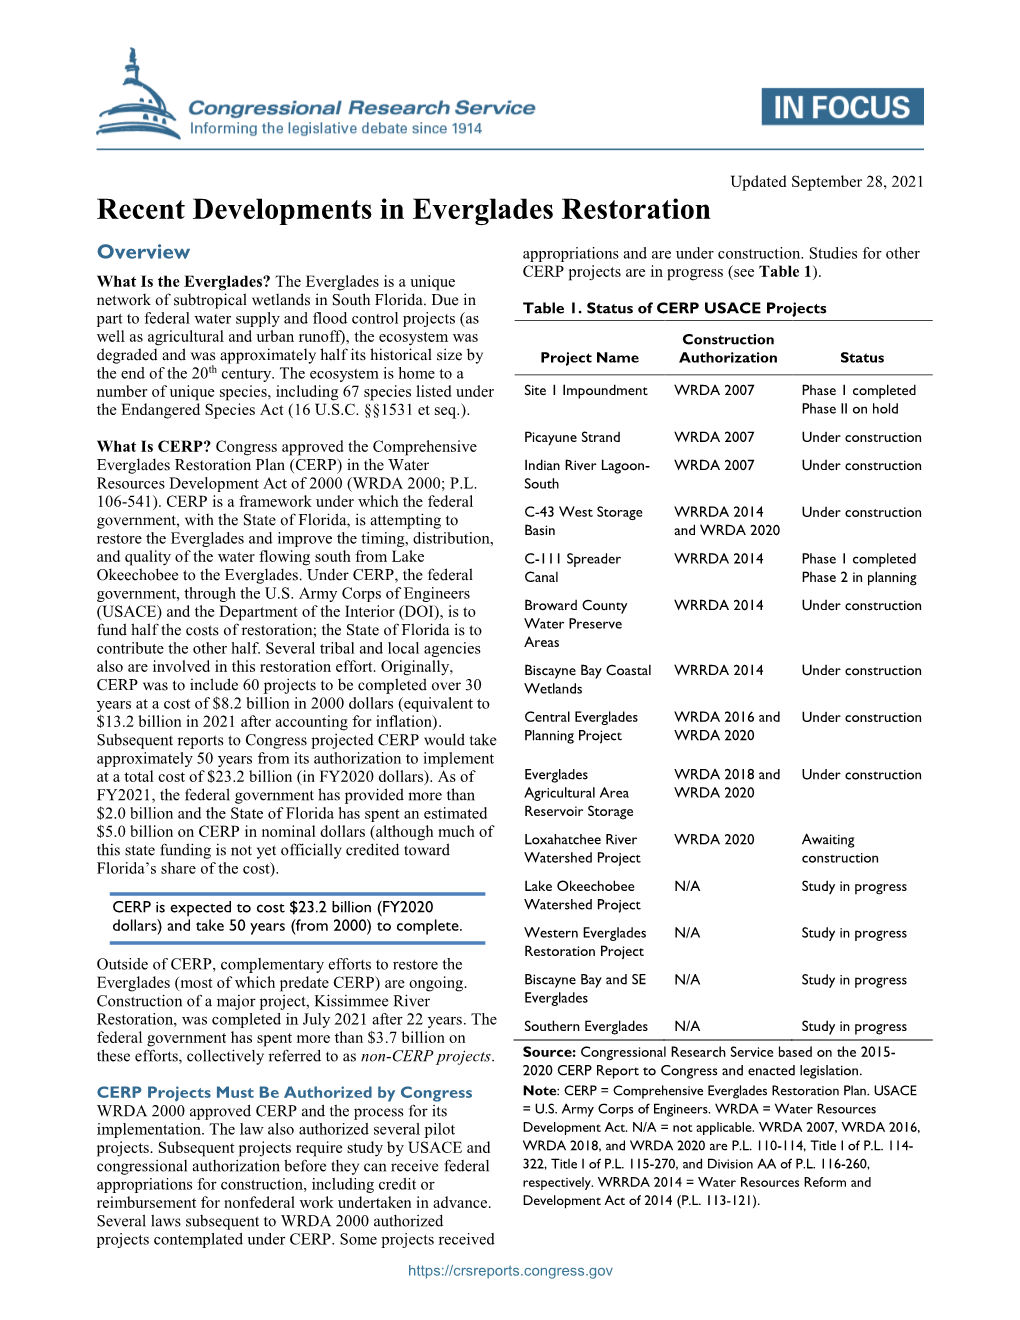 Recent Developments in Everglades Restoration